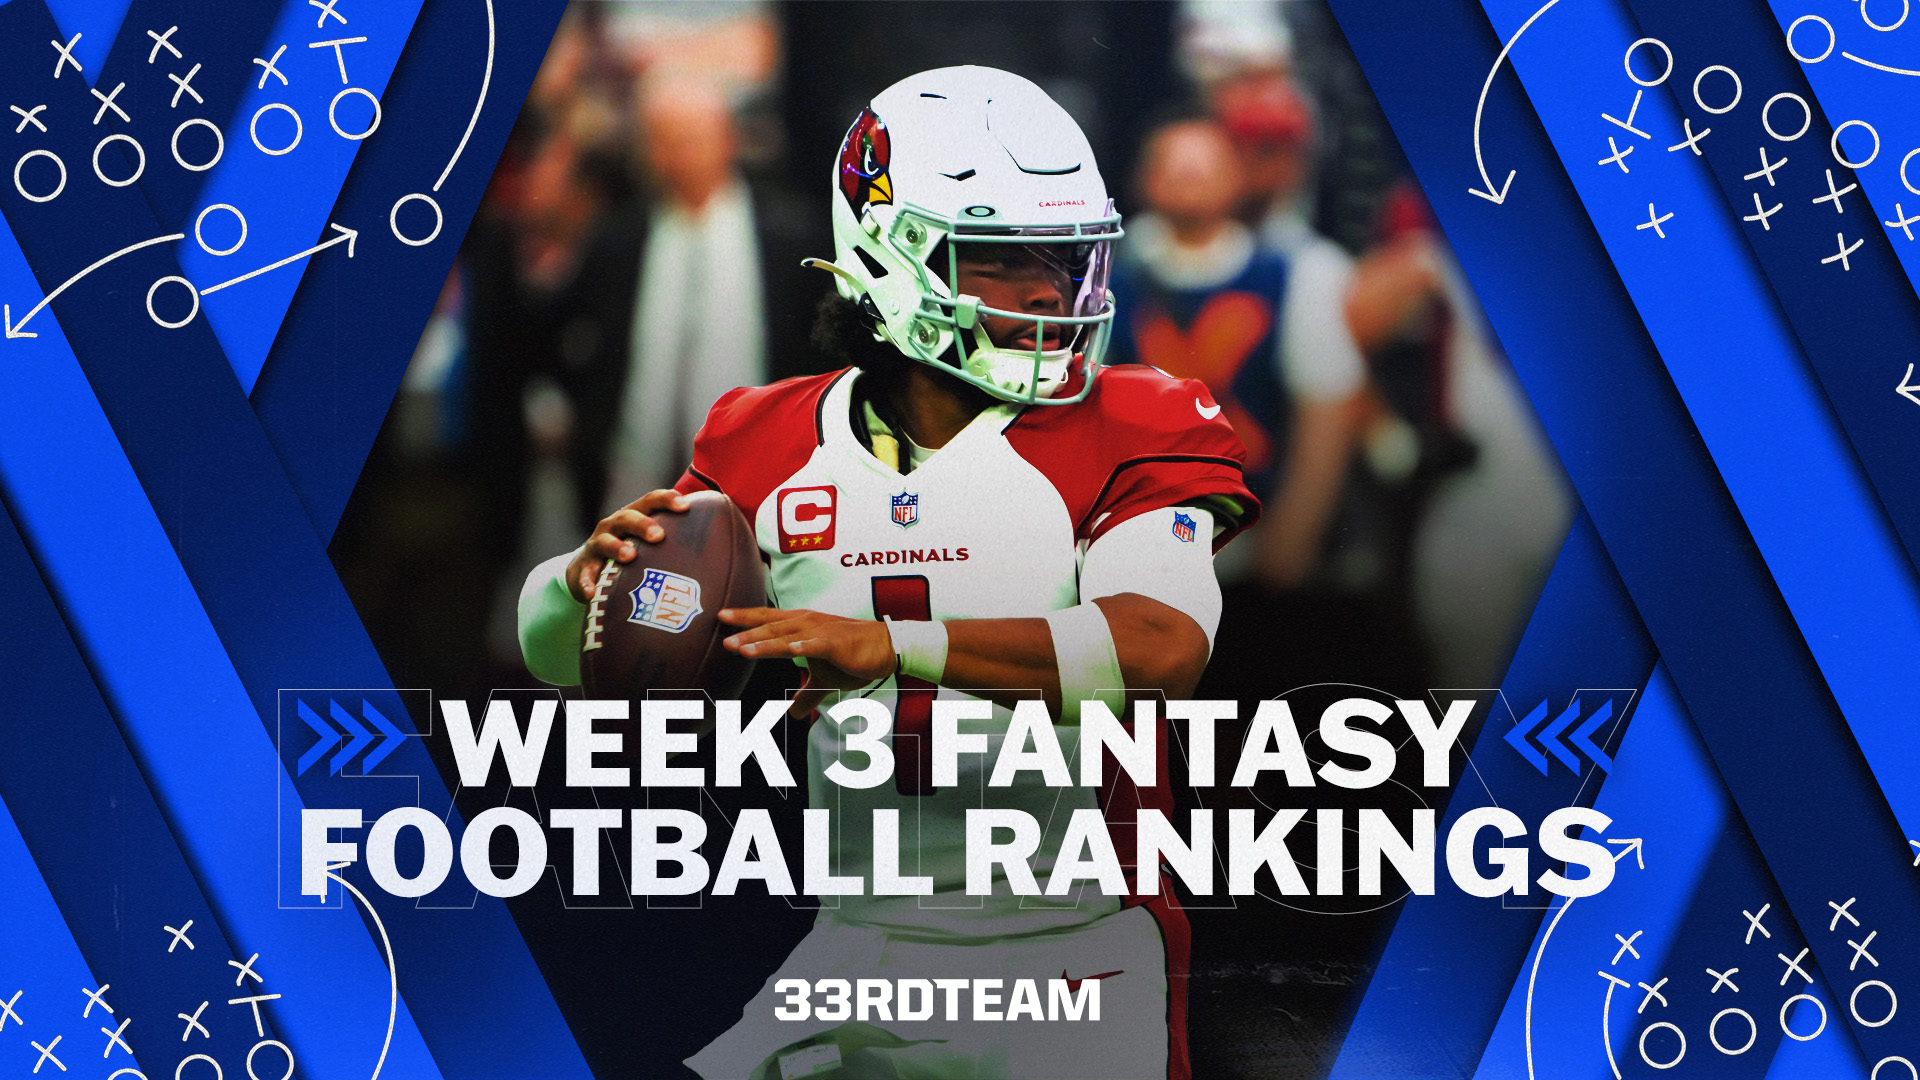 Week 3 Fantasy Football Rankings